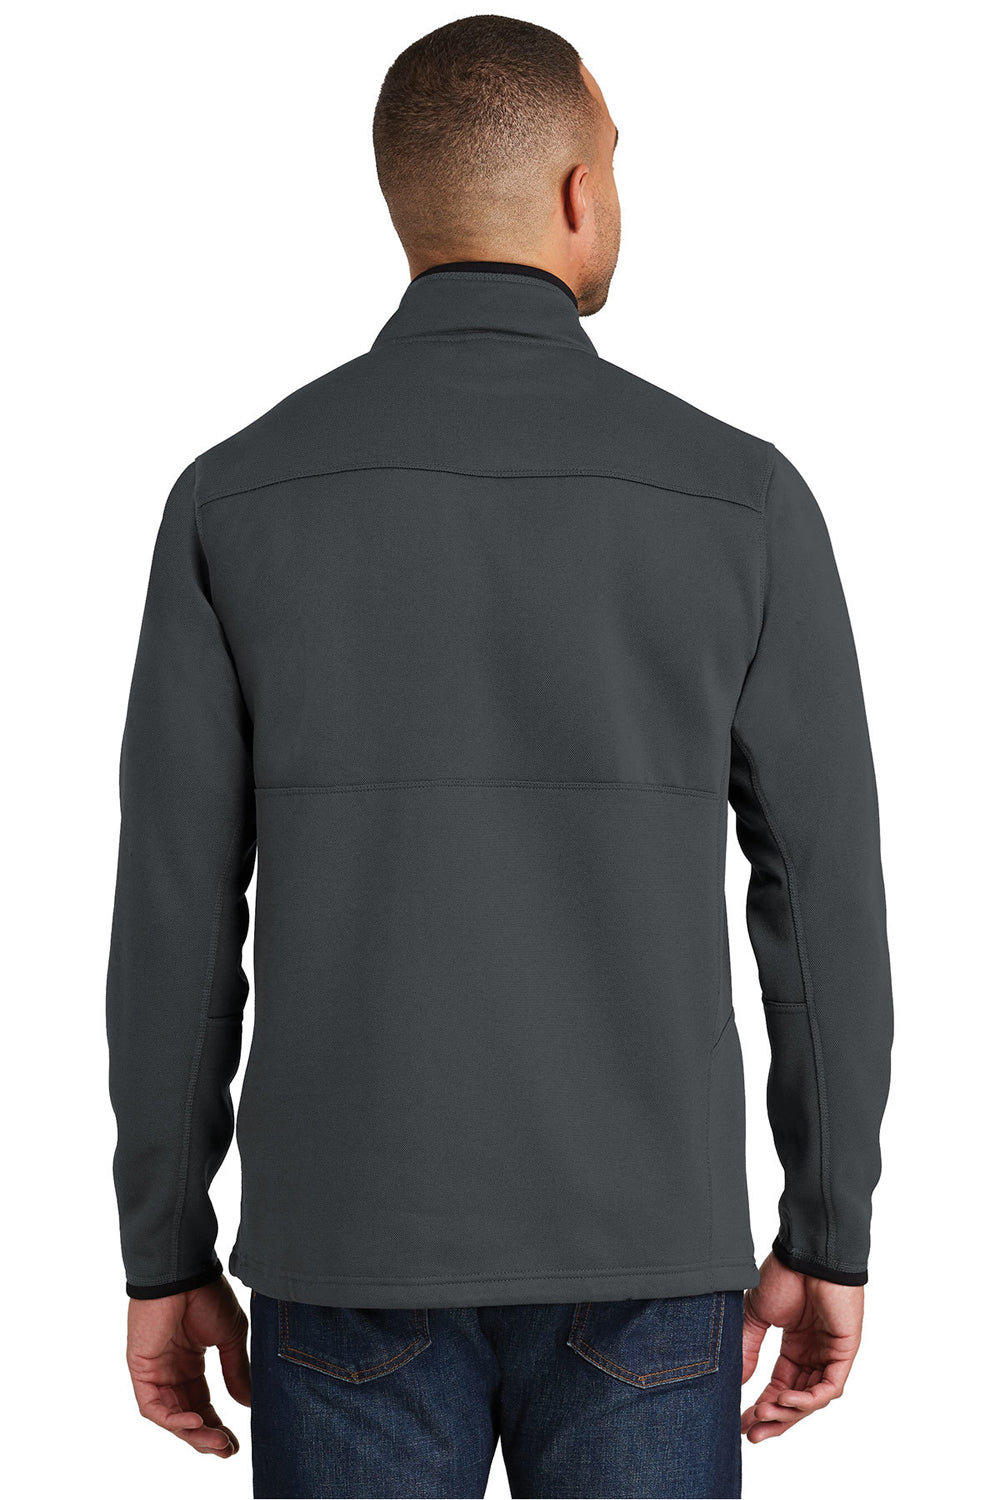 Port Authority F222 Mens Full Zip Fleece Jacket Graphite Grey Back